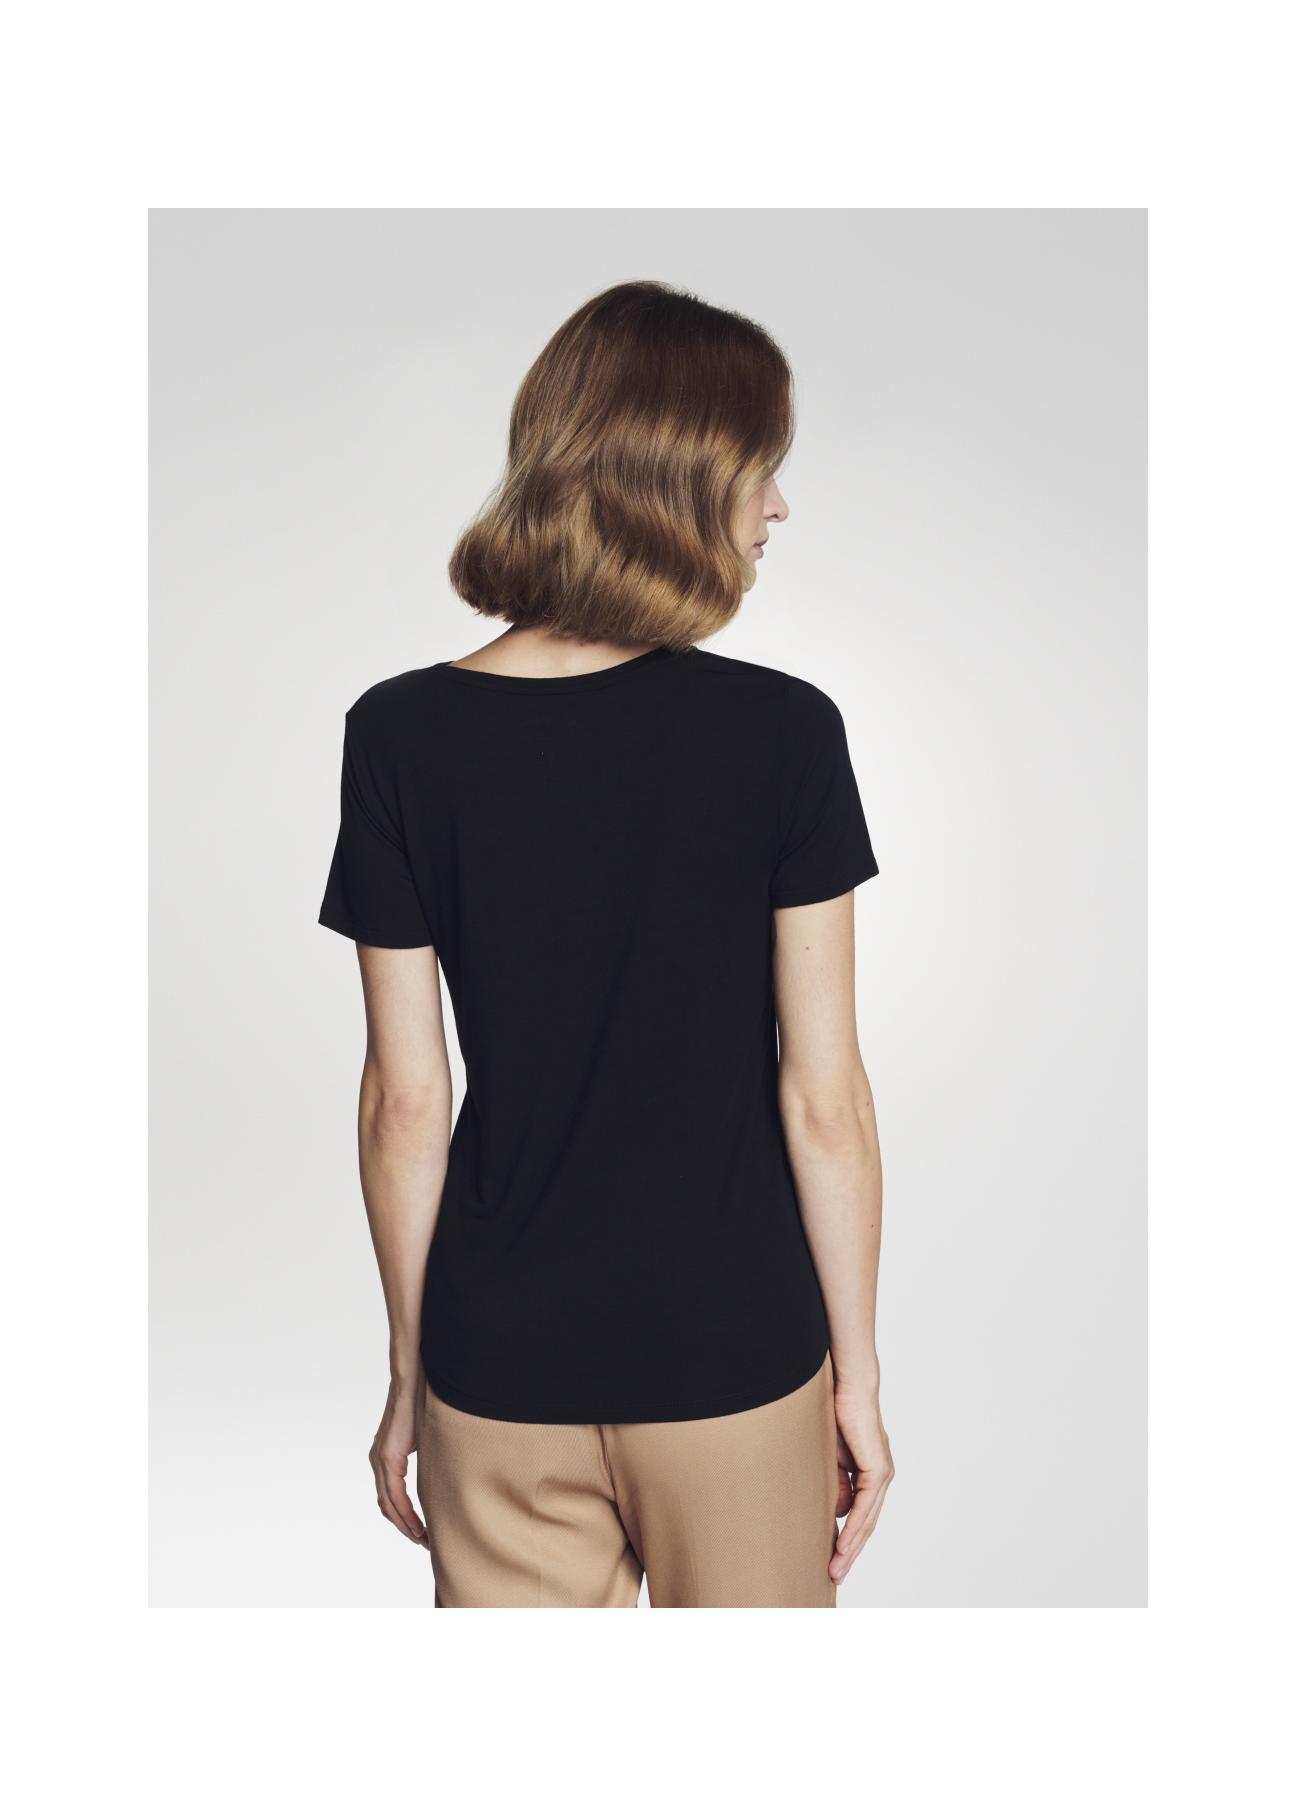 Czarny T-shirt damski z aplikacją TSHDT-0071-99(Z22)